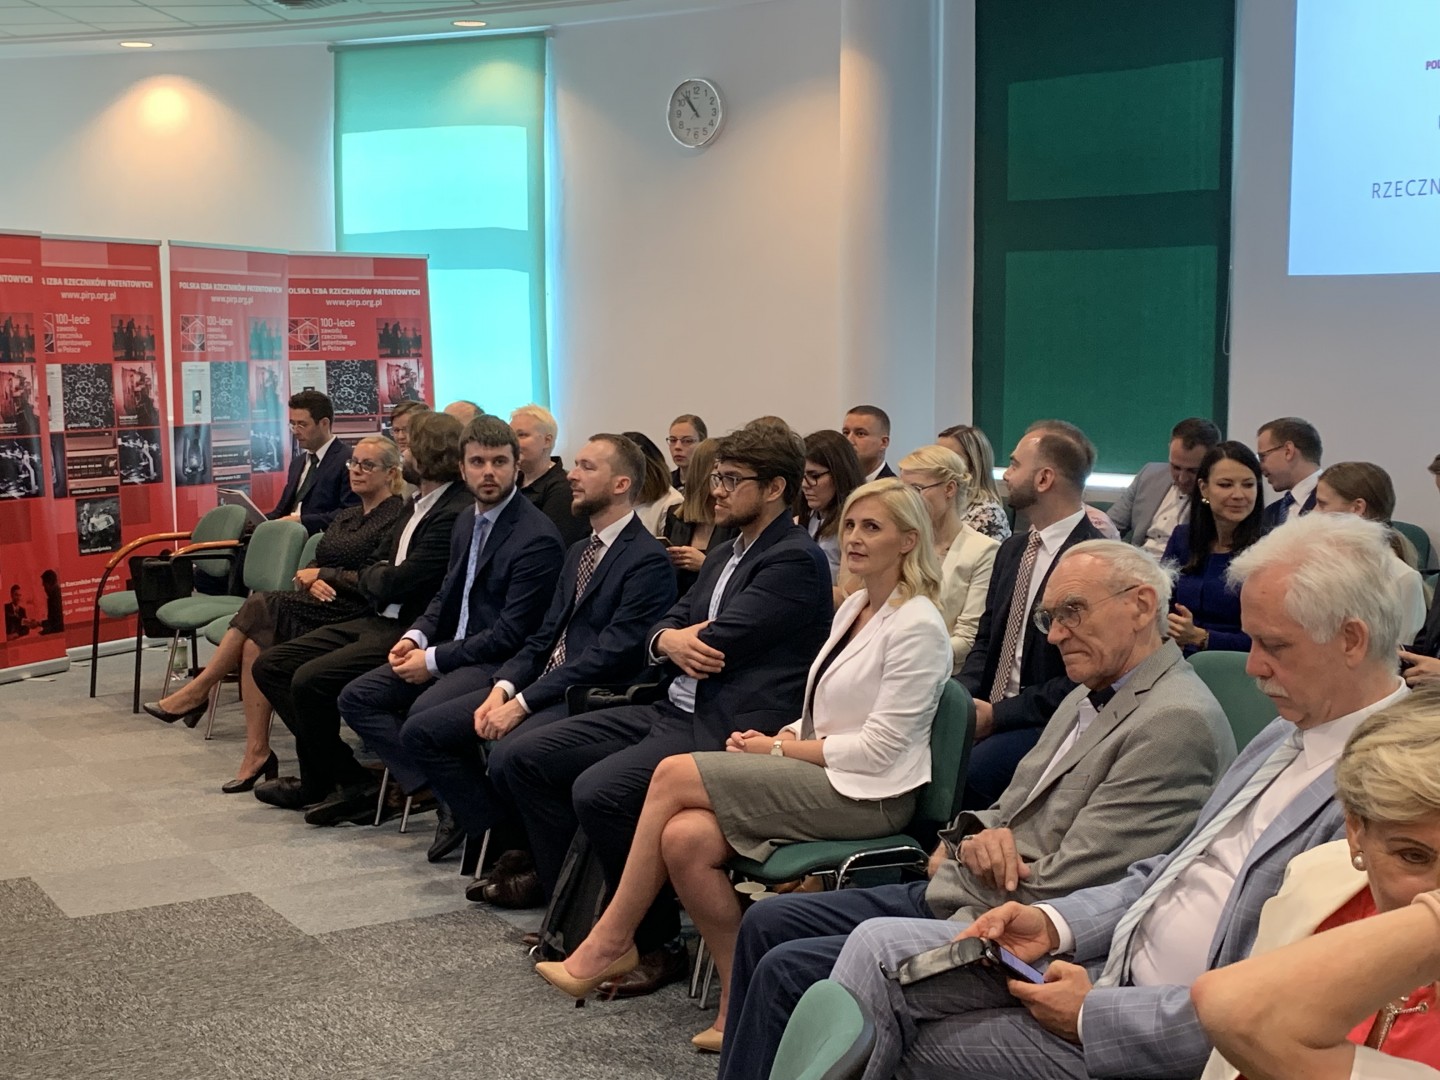 Ślubowanie nowych rzeczników patentowych w dniu 9 sierpnia 2019 r. w Polskiej Izbie Rzeczników Patentowych.